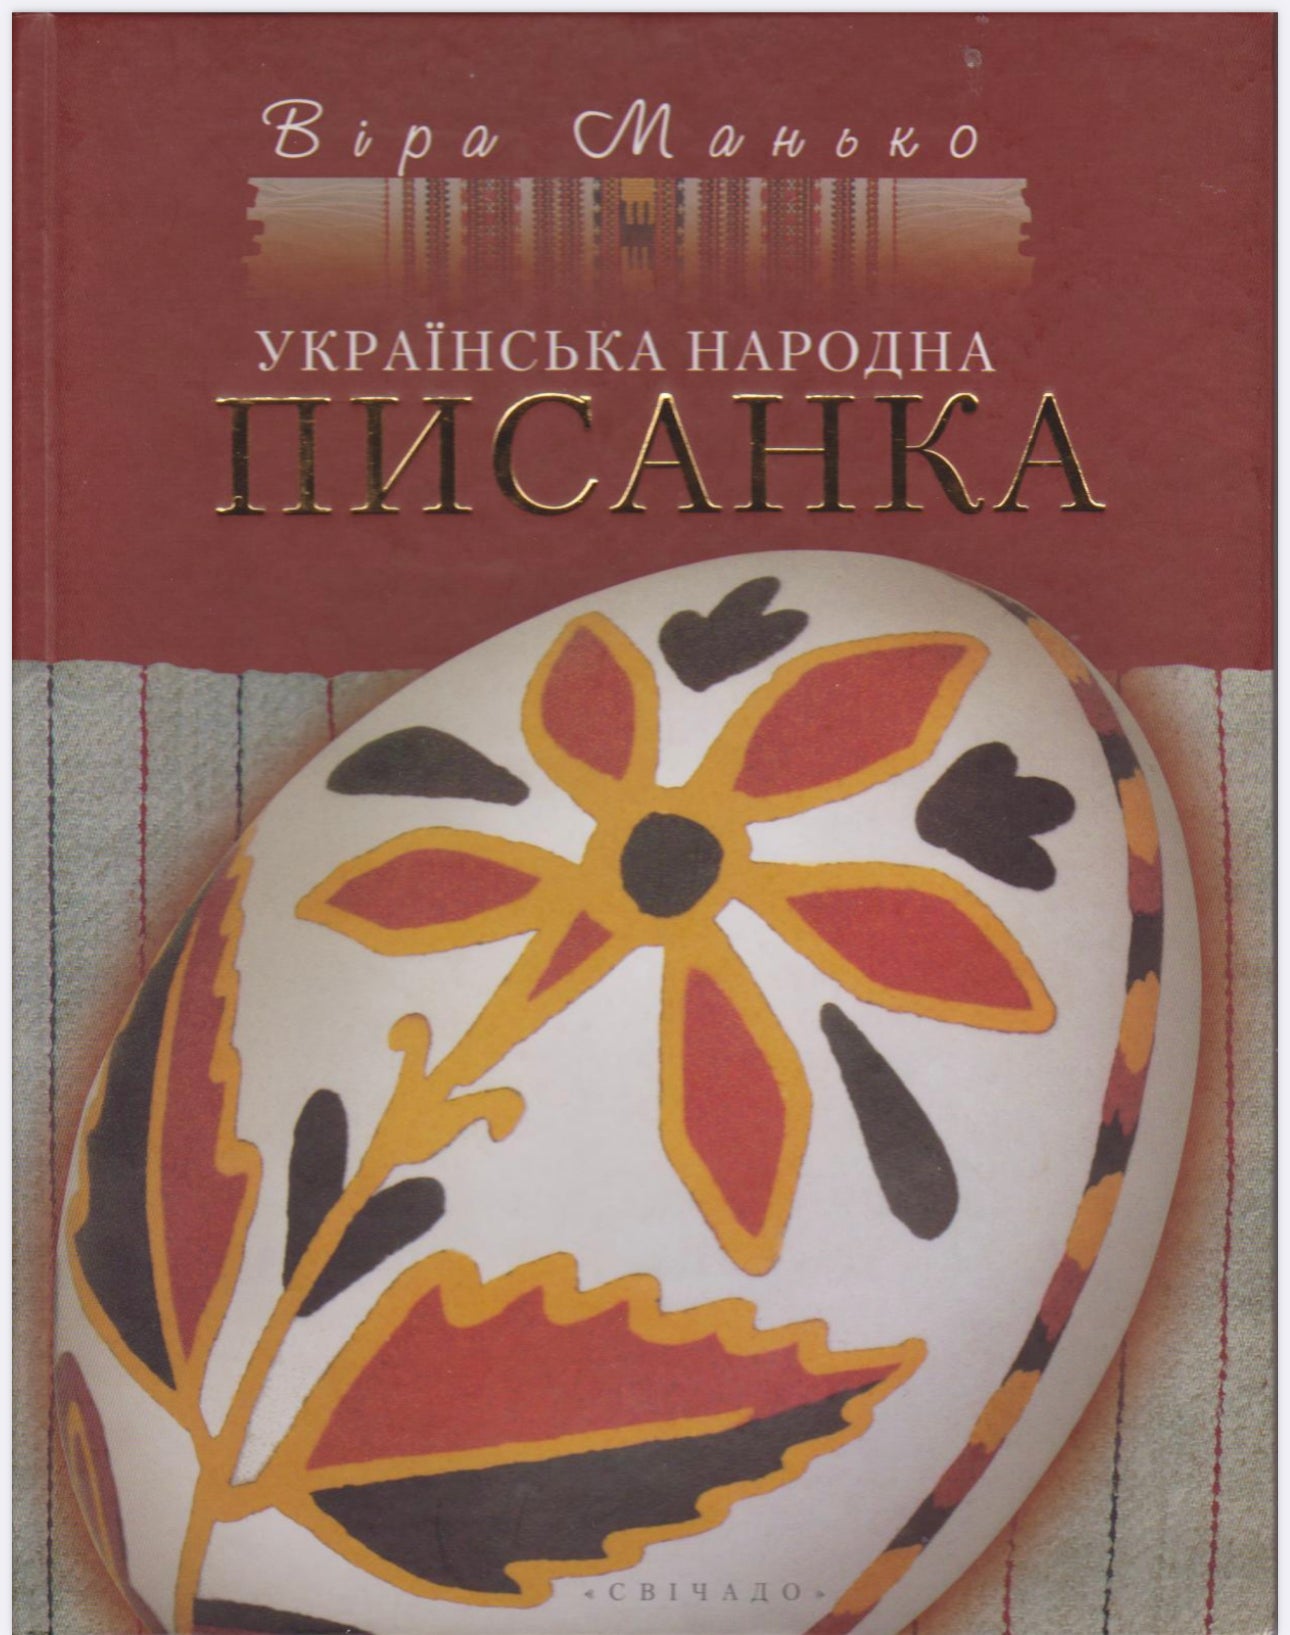 The Ukrainian Folk Pysanka - Vira Manko - Ukrainian